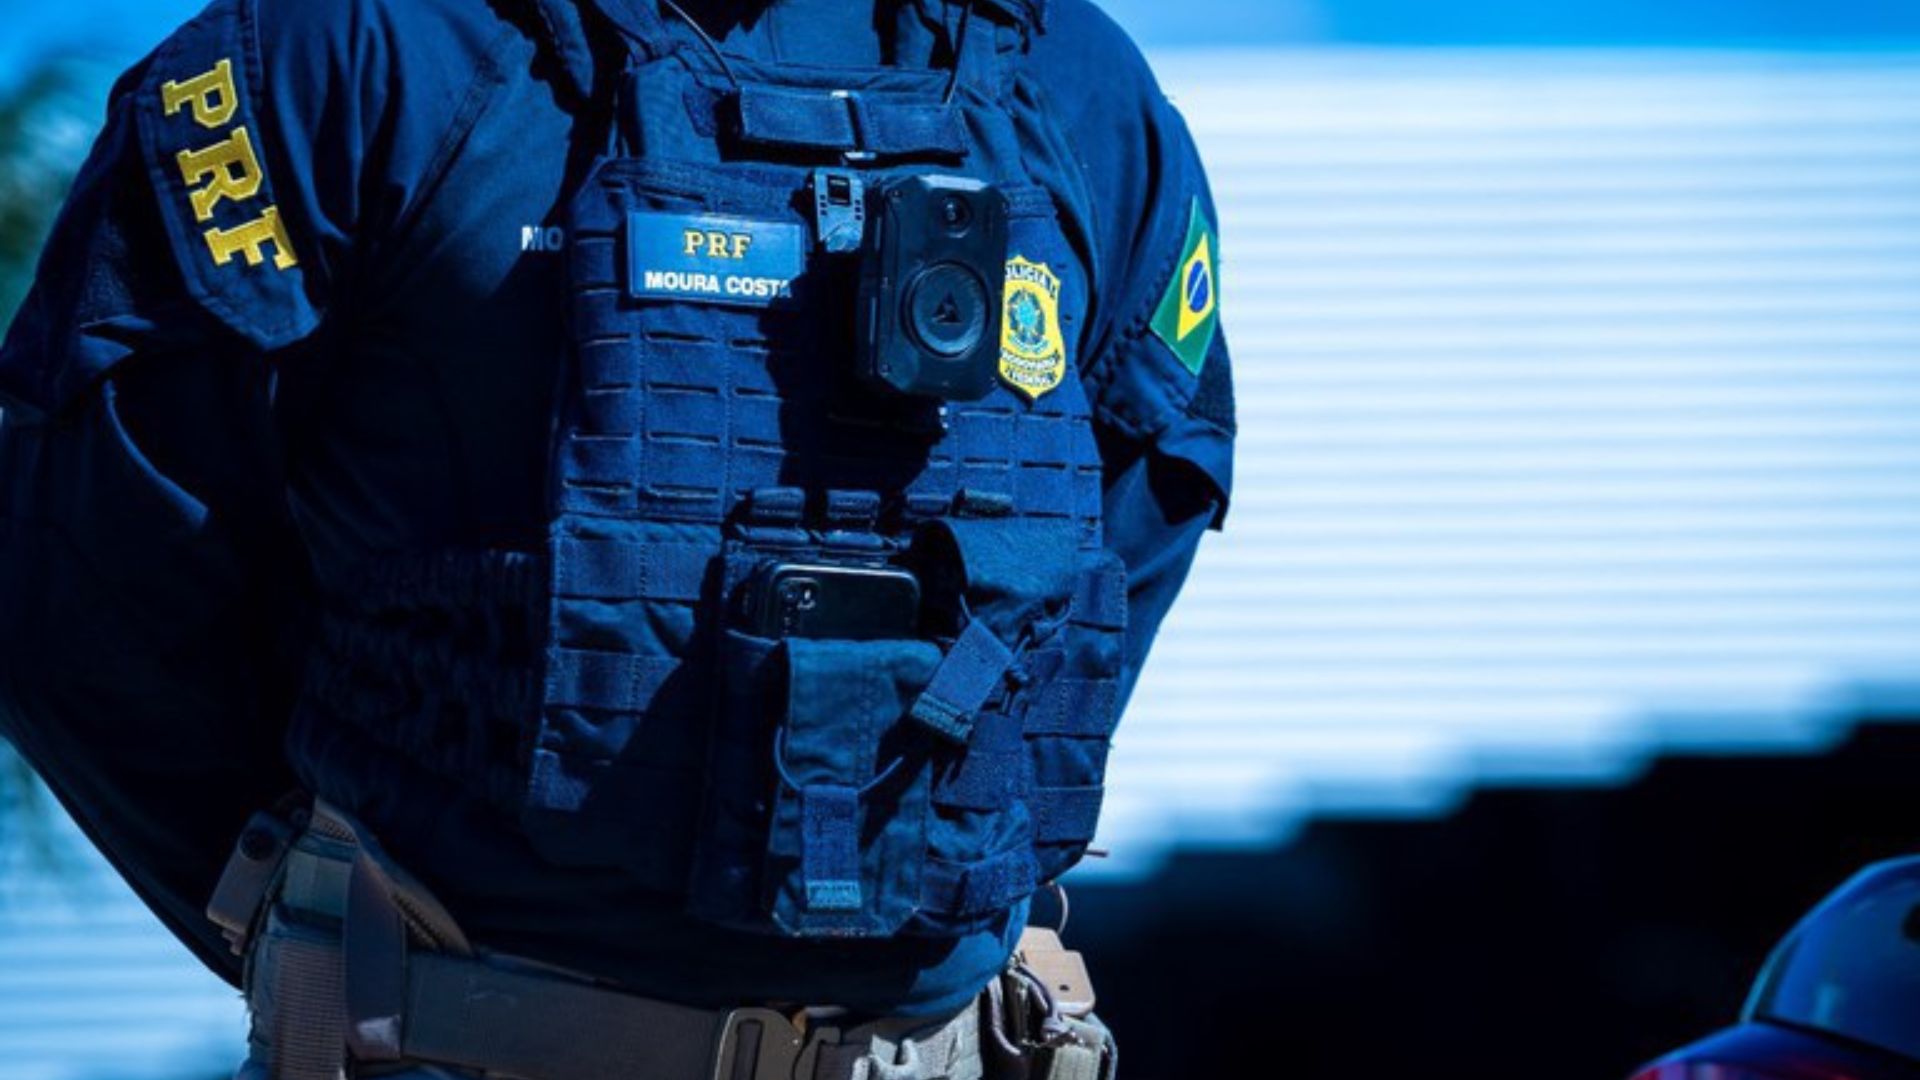 Policia Rodoviária Federal vai aderir câmeras corporais e veiculares. Foto: Gov.br.